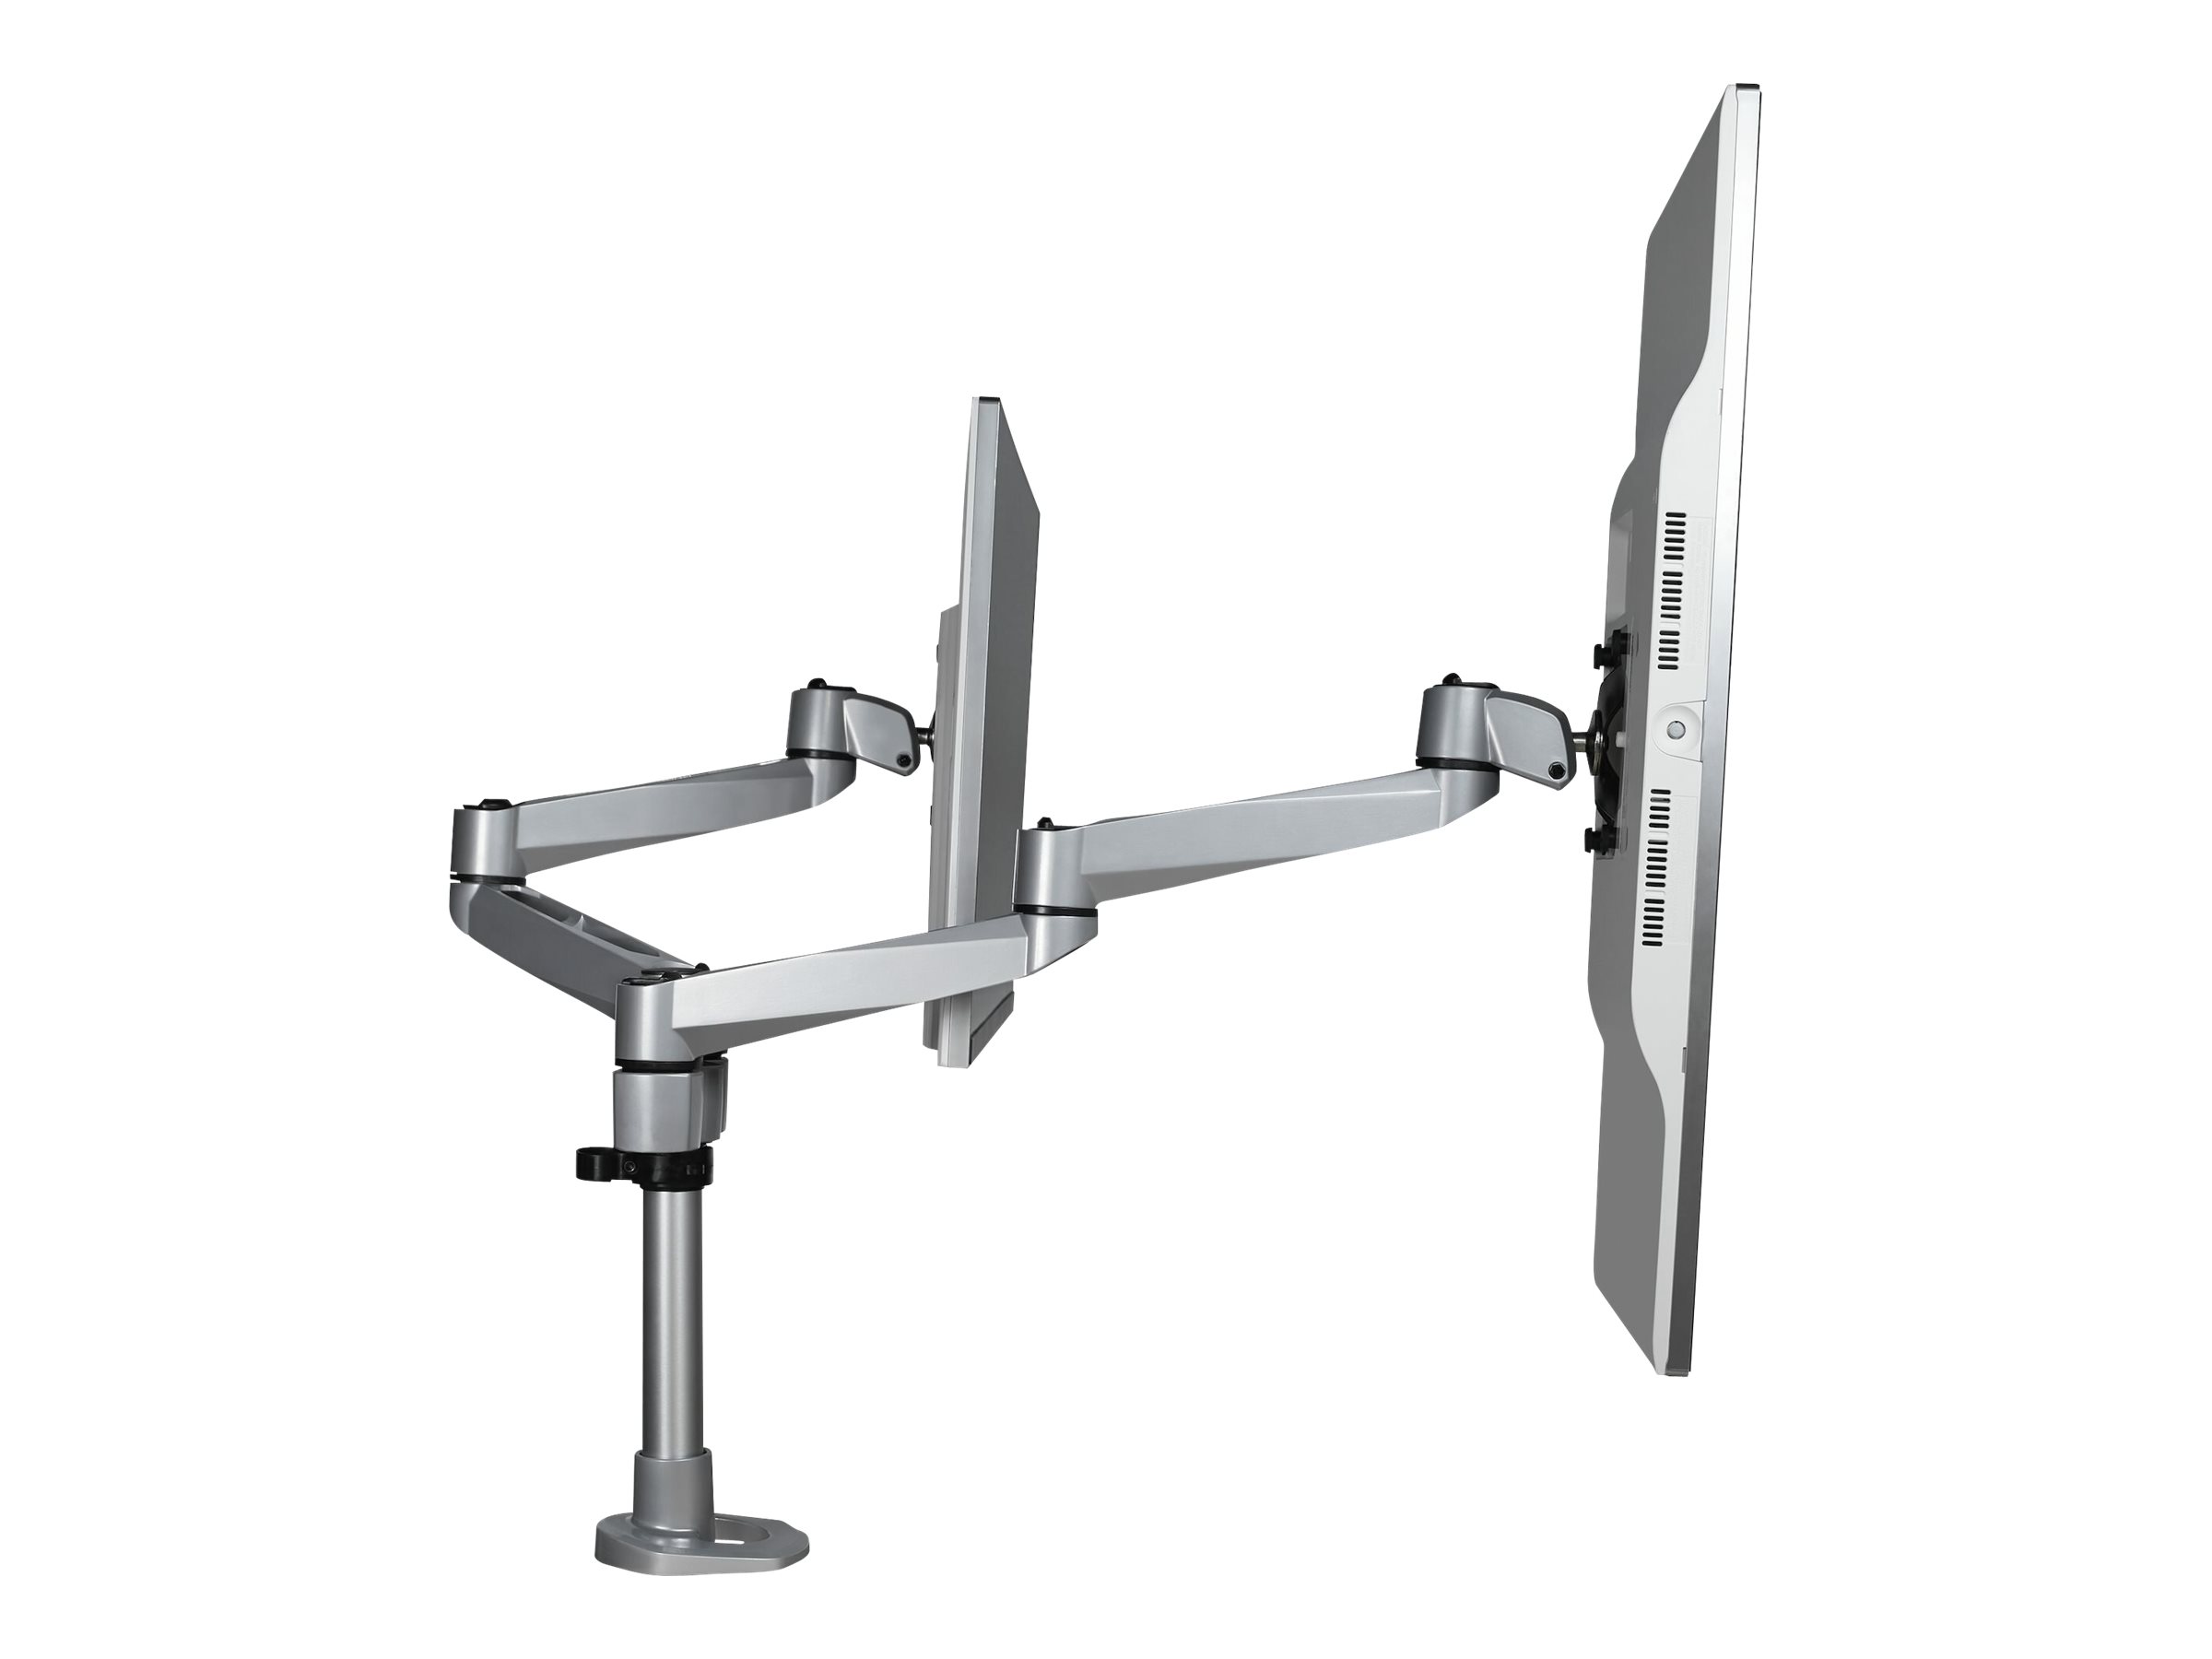 StarTech.com Doppelter Monitorarm für den Tisch - Premium Gelenkarm für Monitore - VESA Monitore bis 30" und 10 kg - höhenverstellbar/drehbar/neigbar/schwenkbar - Klemme/Durchführung (ARMDUALPS)